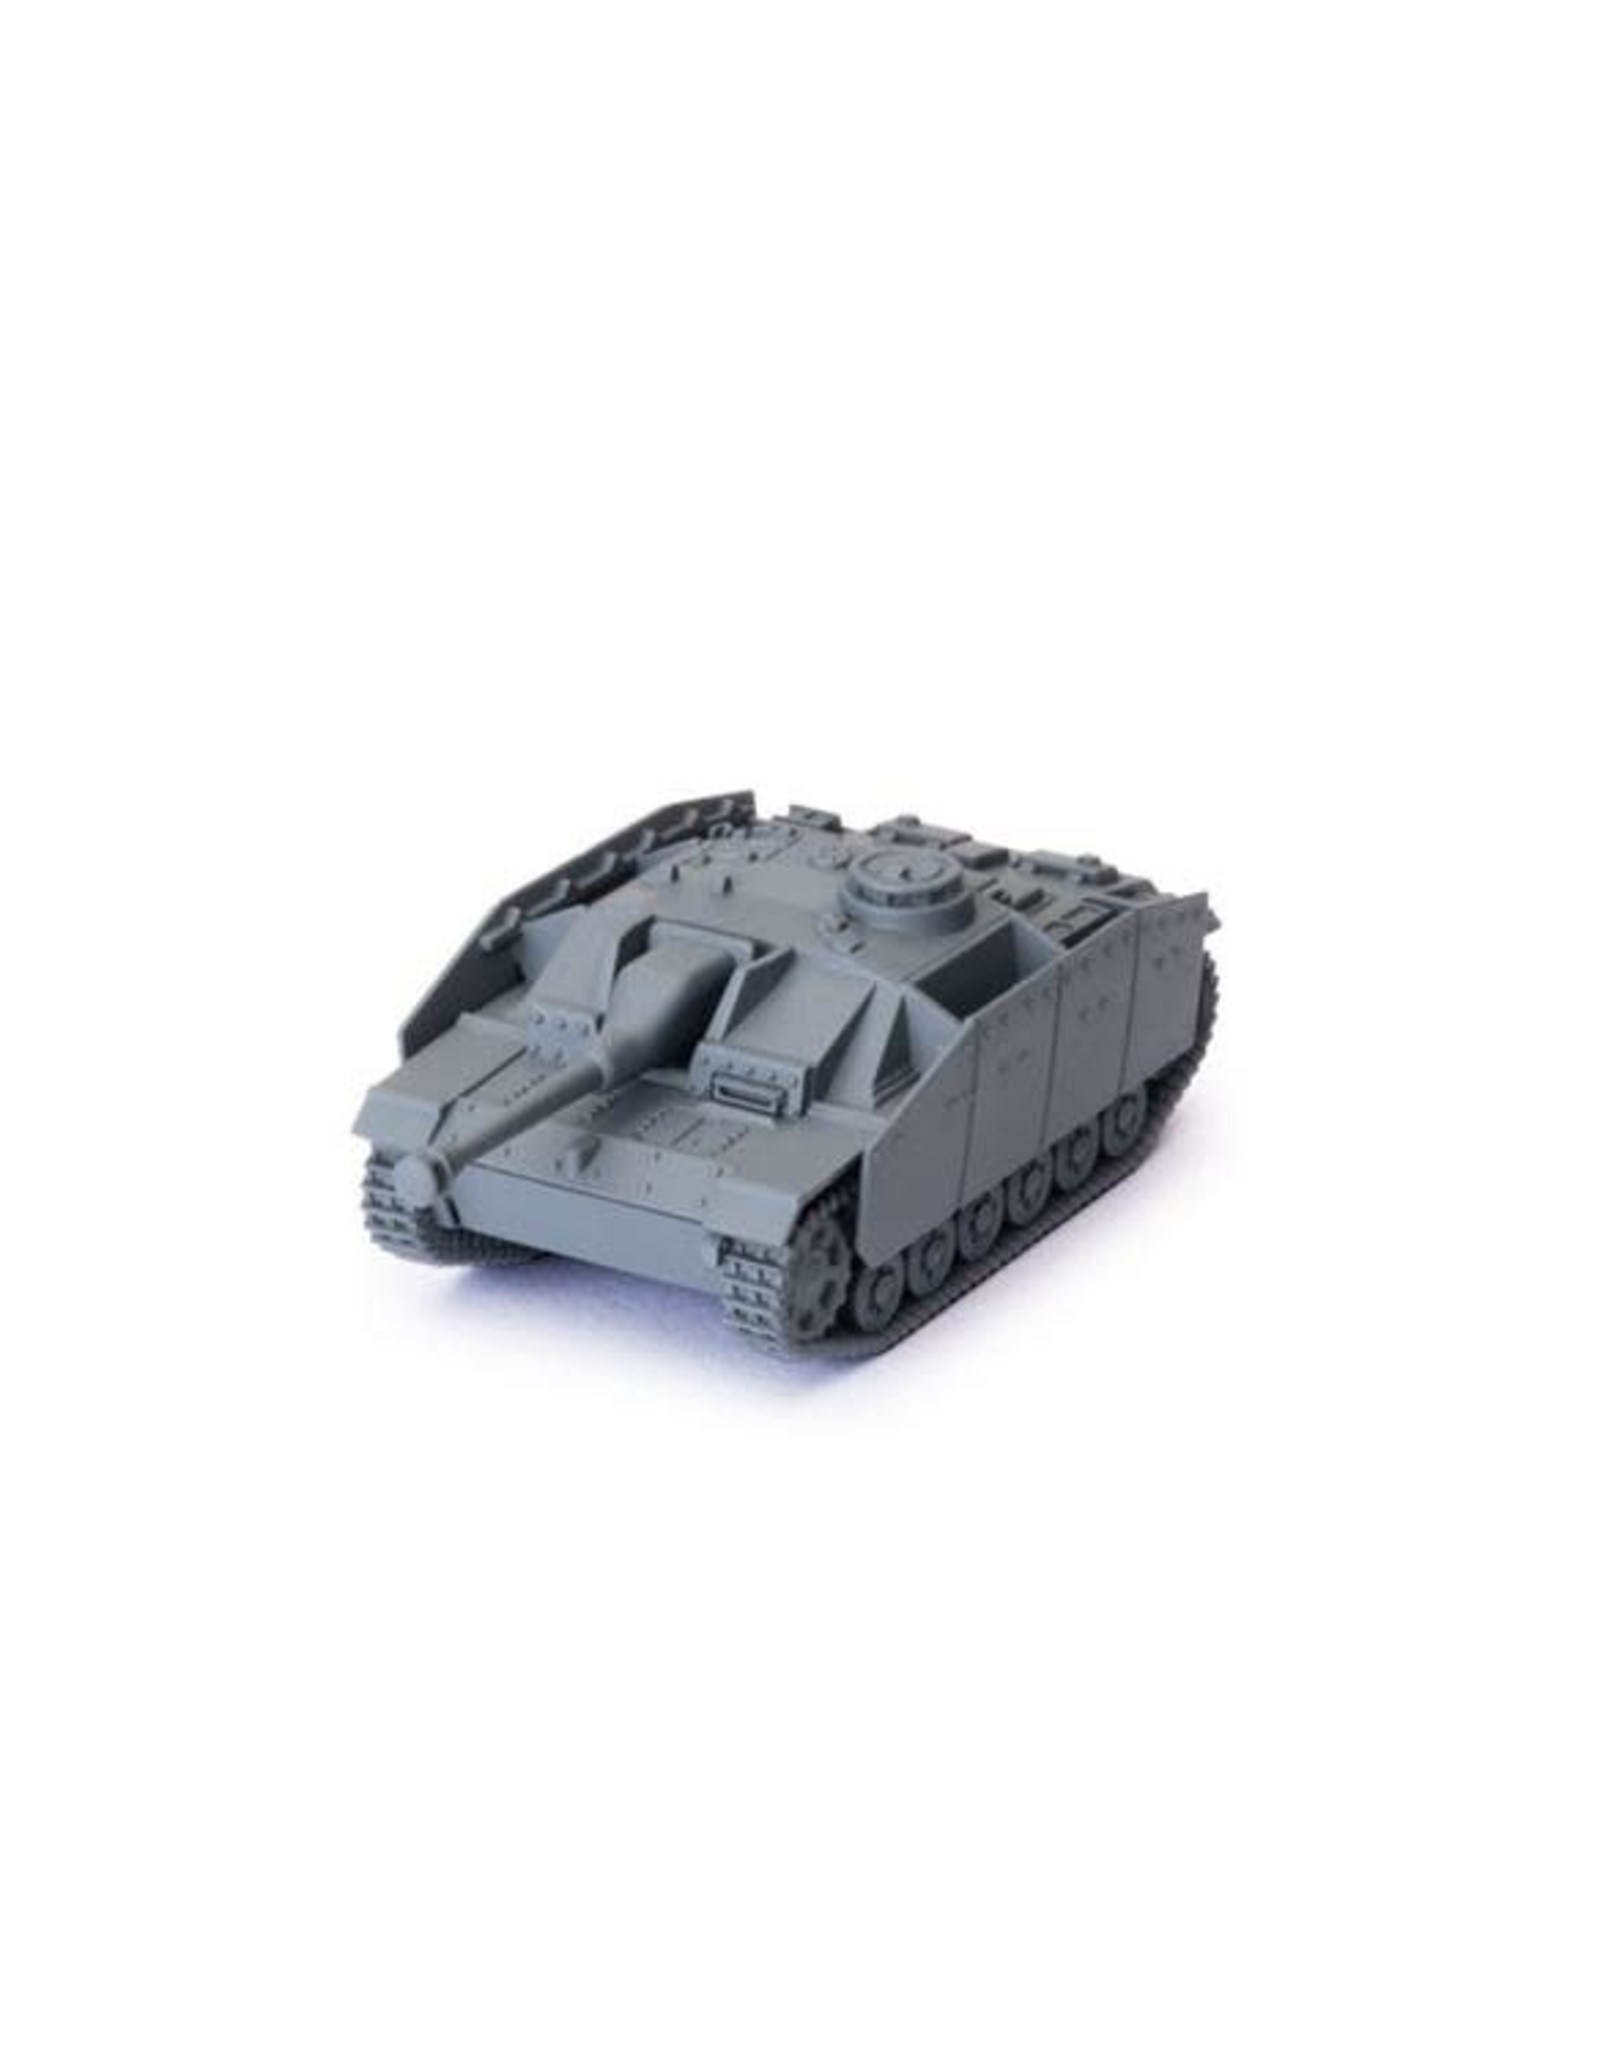 GaleForce nine World of Tanks Expansion - German (StuG III G)